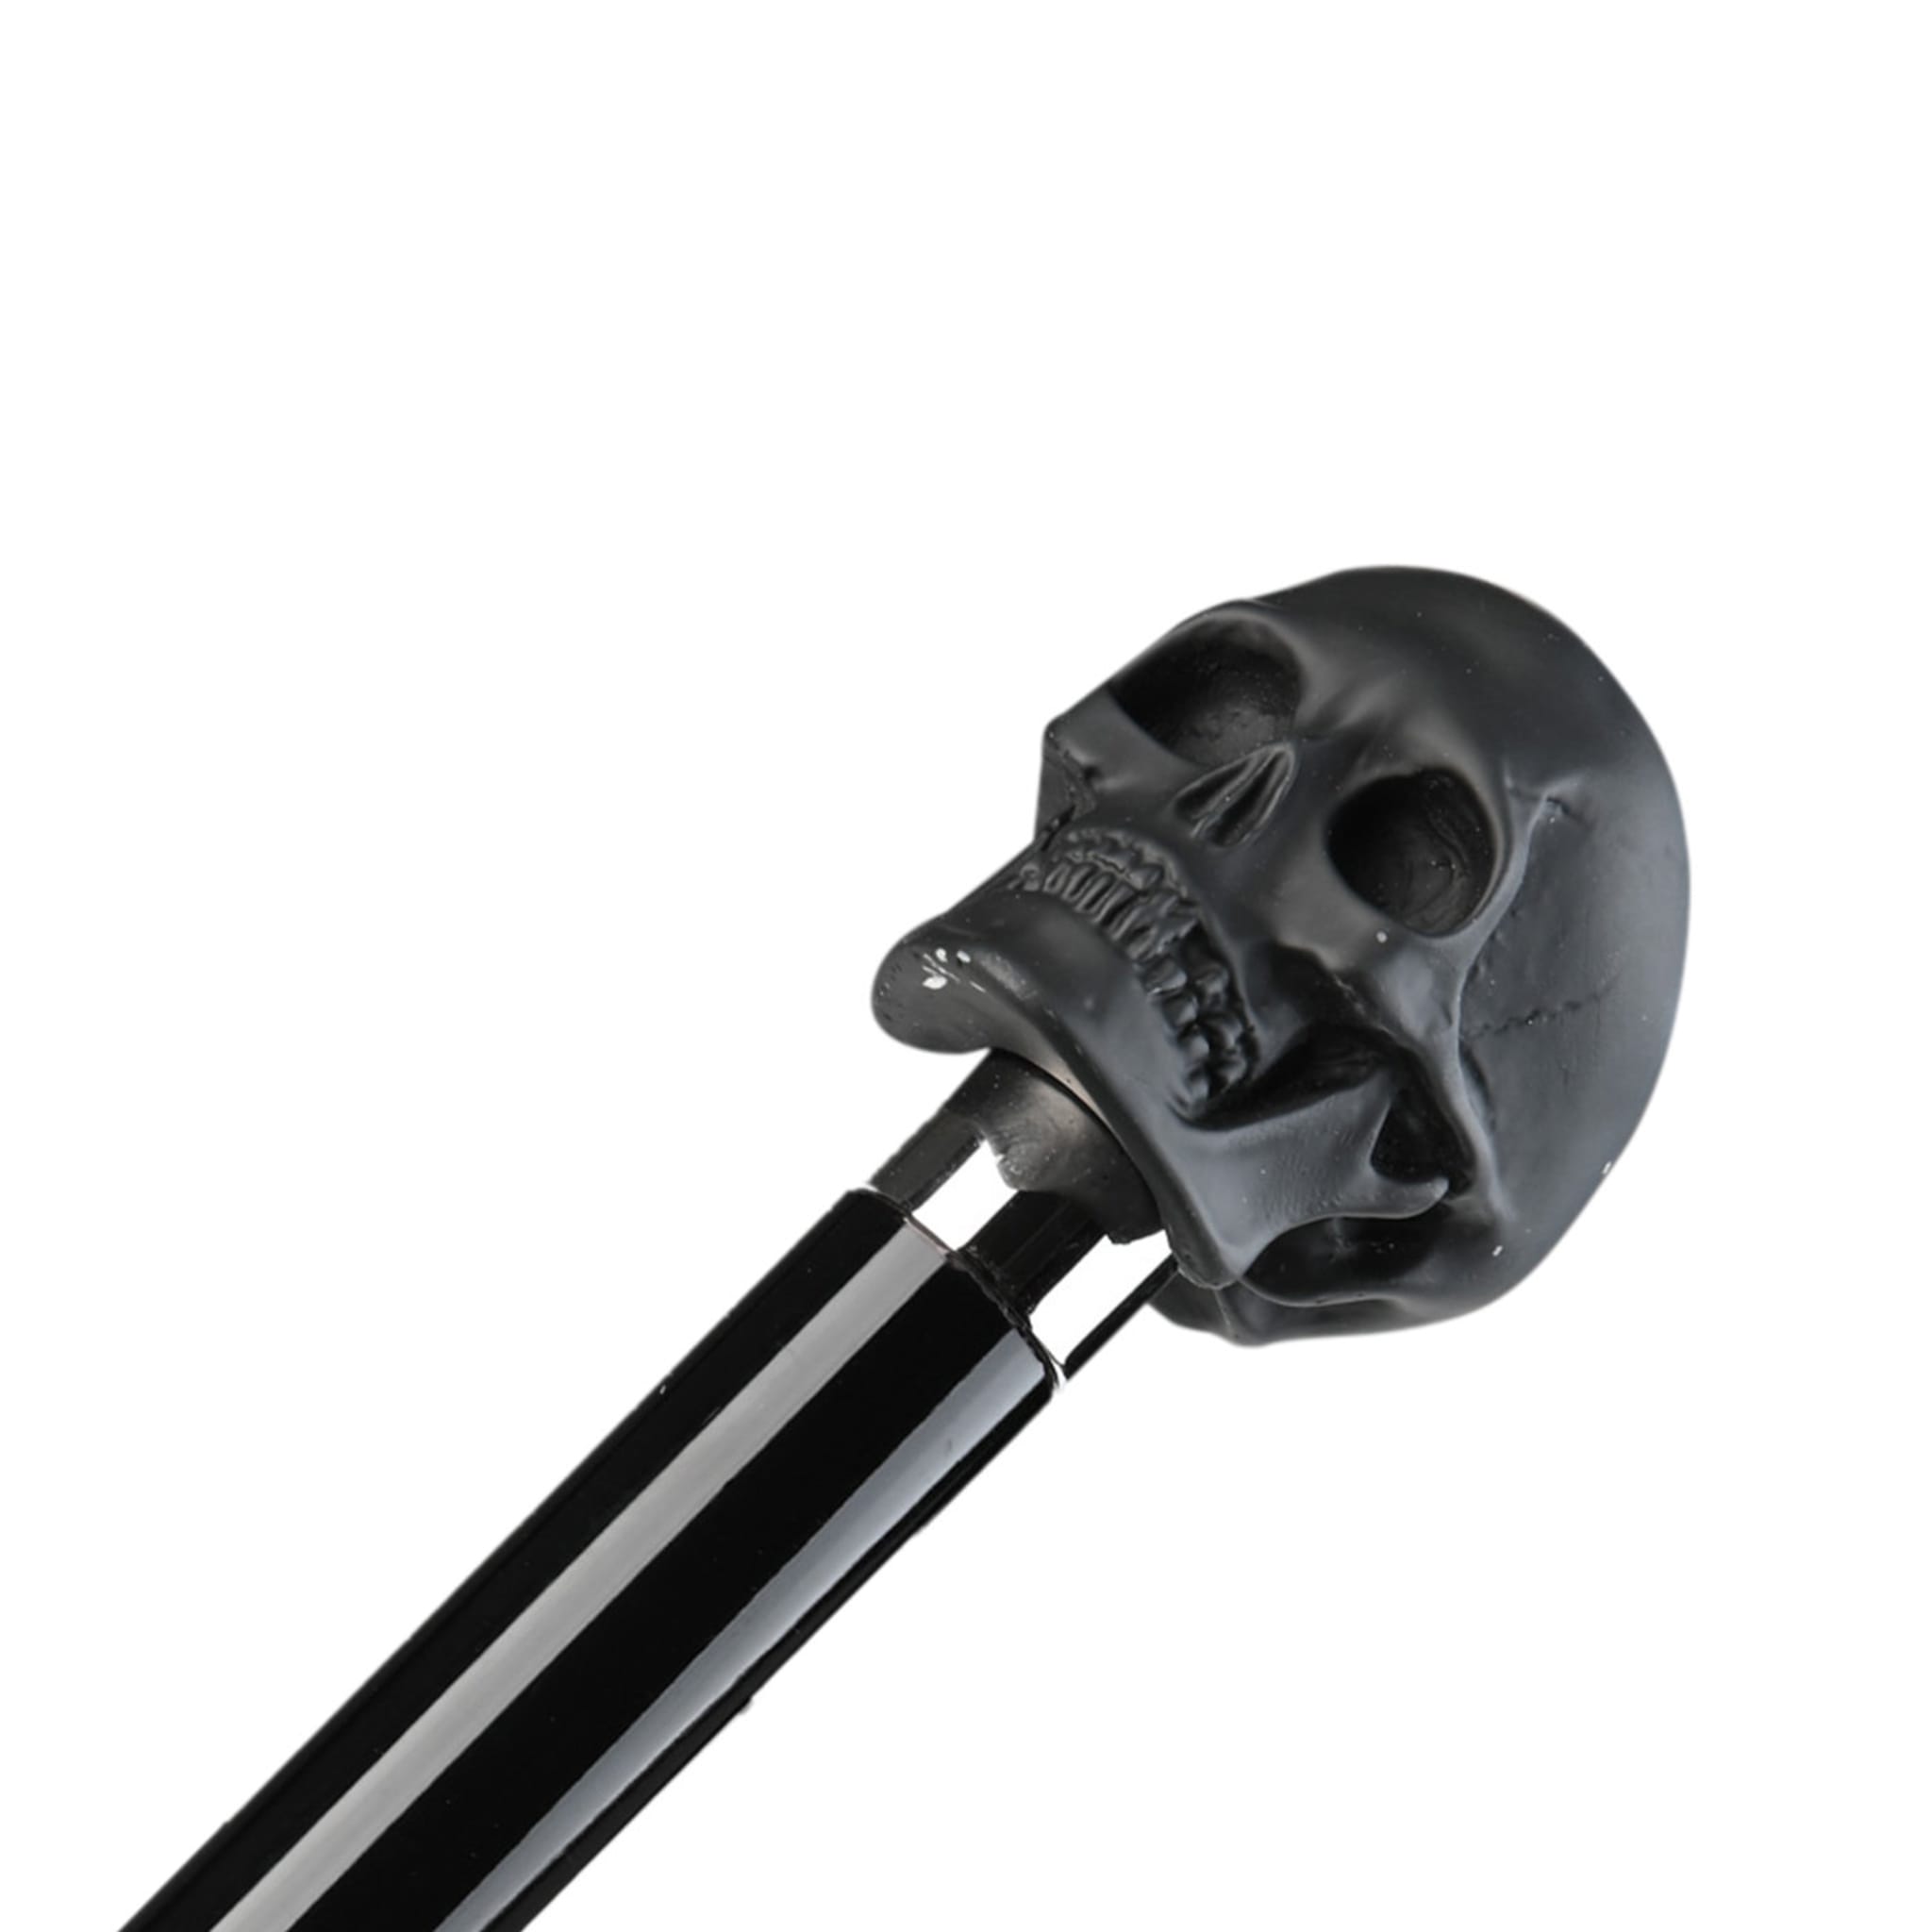 Schwarz-weiß gestreifter Regenschirm mit schwarzem Totenkopf-Griff - Alternative Ansicht 2